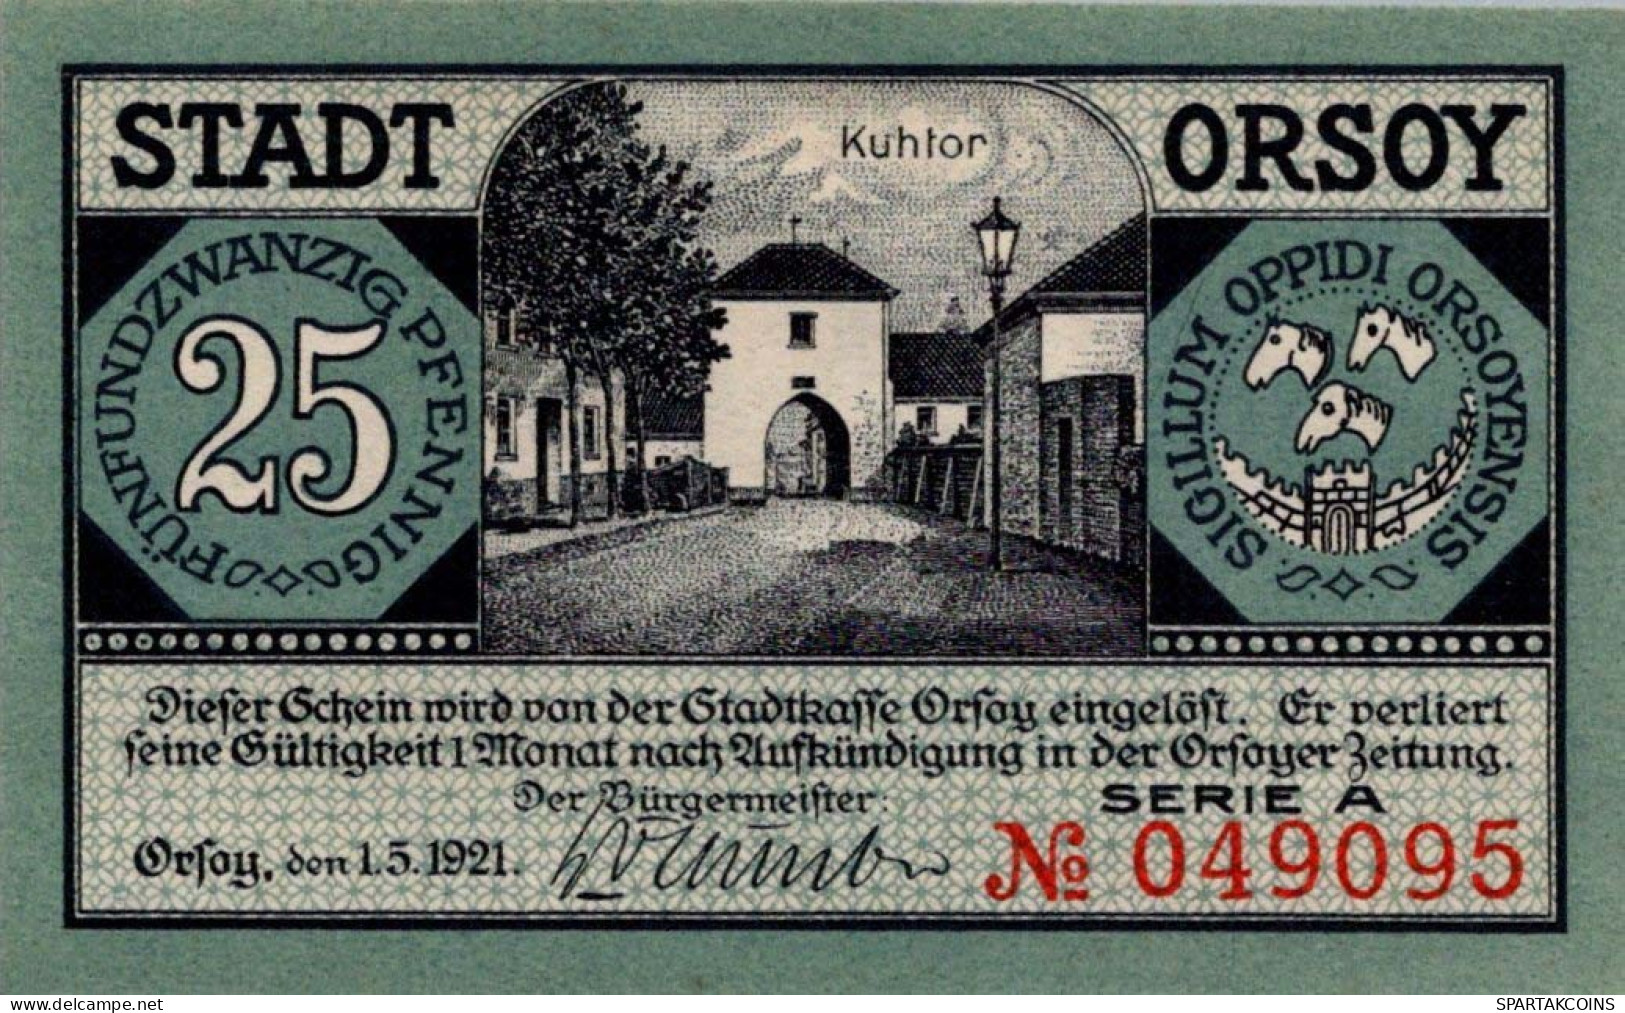 25 PFENNIG 1921 Stadt ORSOY Rhine UNC DEUTSCHLAND Notgeld Banknote #PI849 - [11] Local Banknote Issues